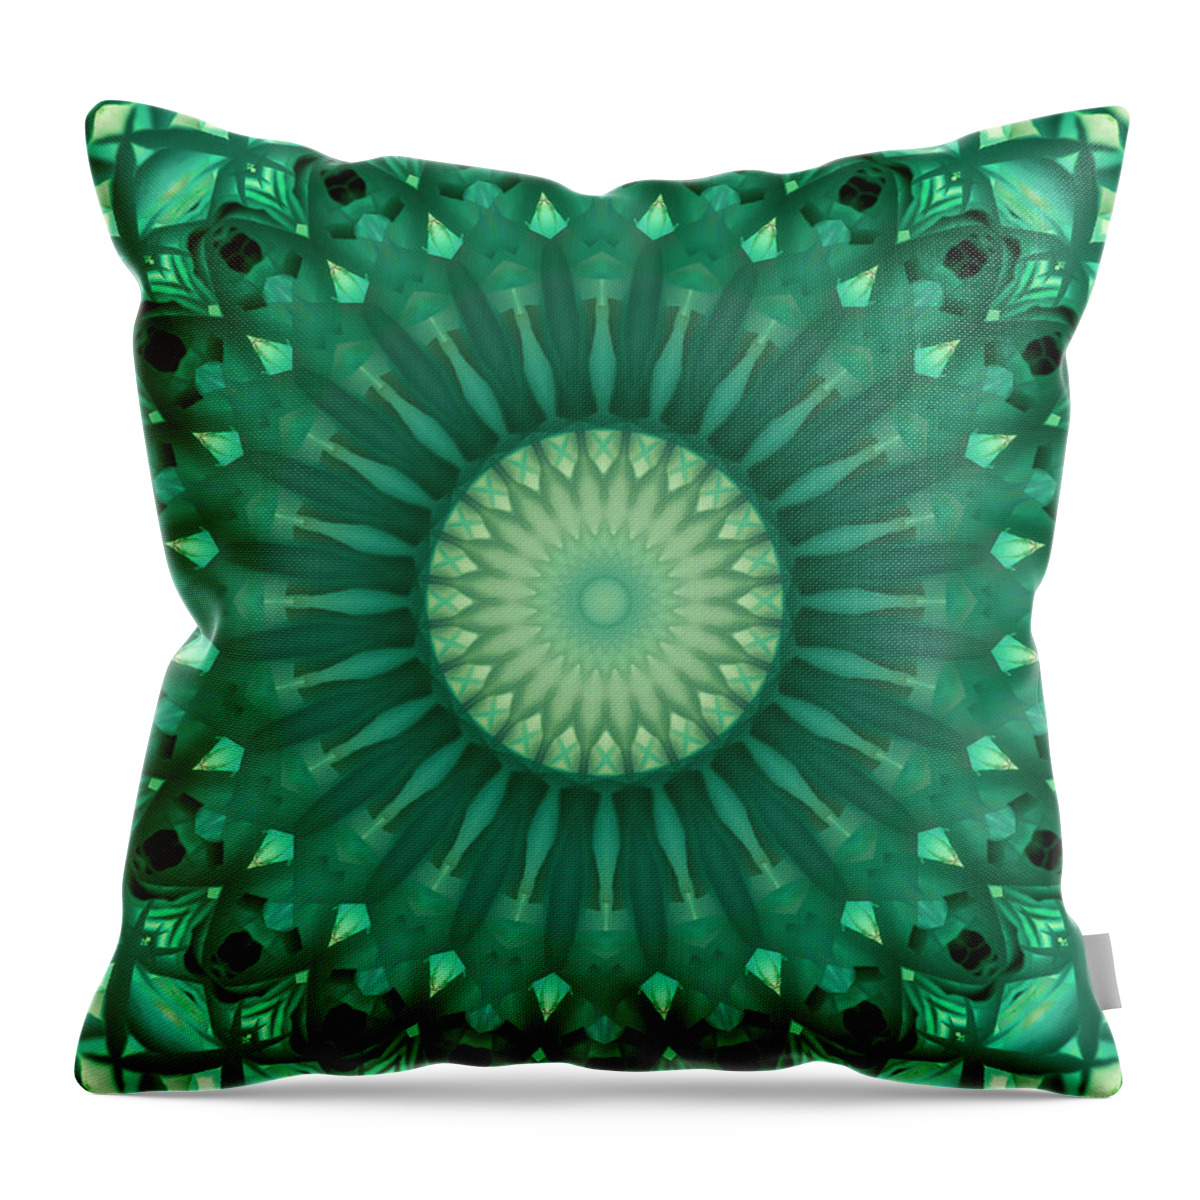 Mandala Throw Pillow featuring the digital art Digital green mandala by Jaroslaw Blaminsky